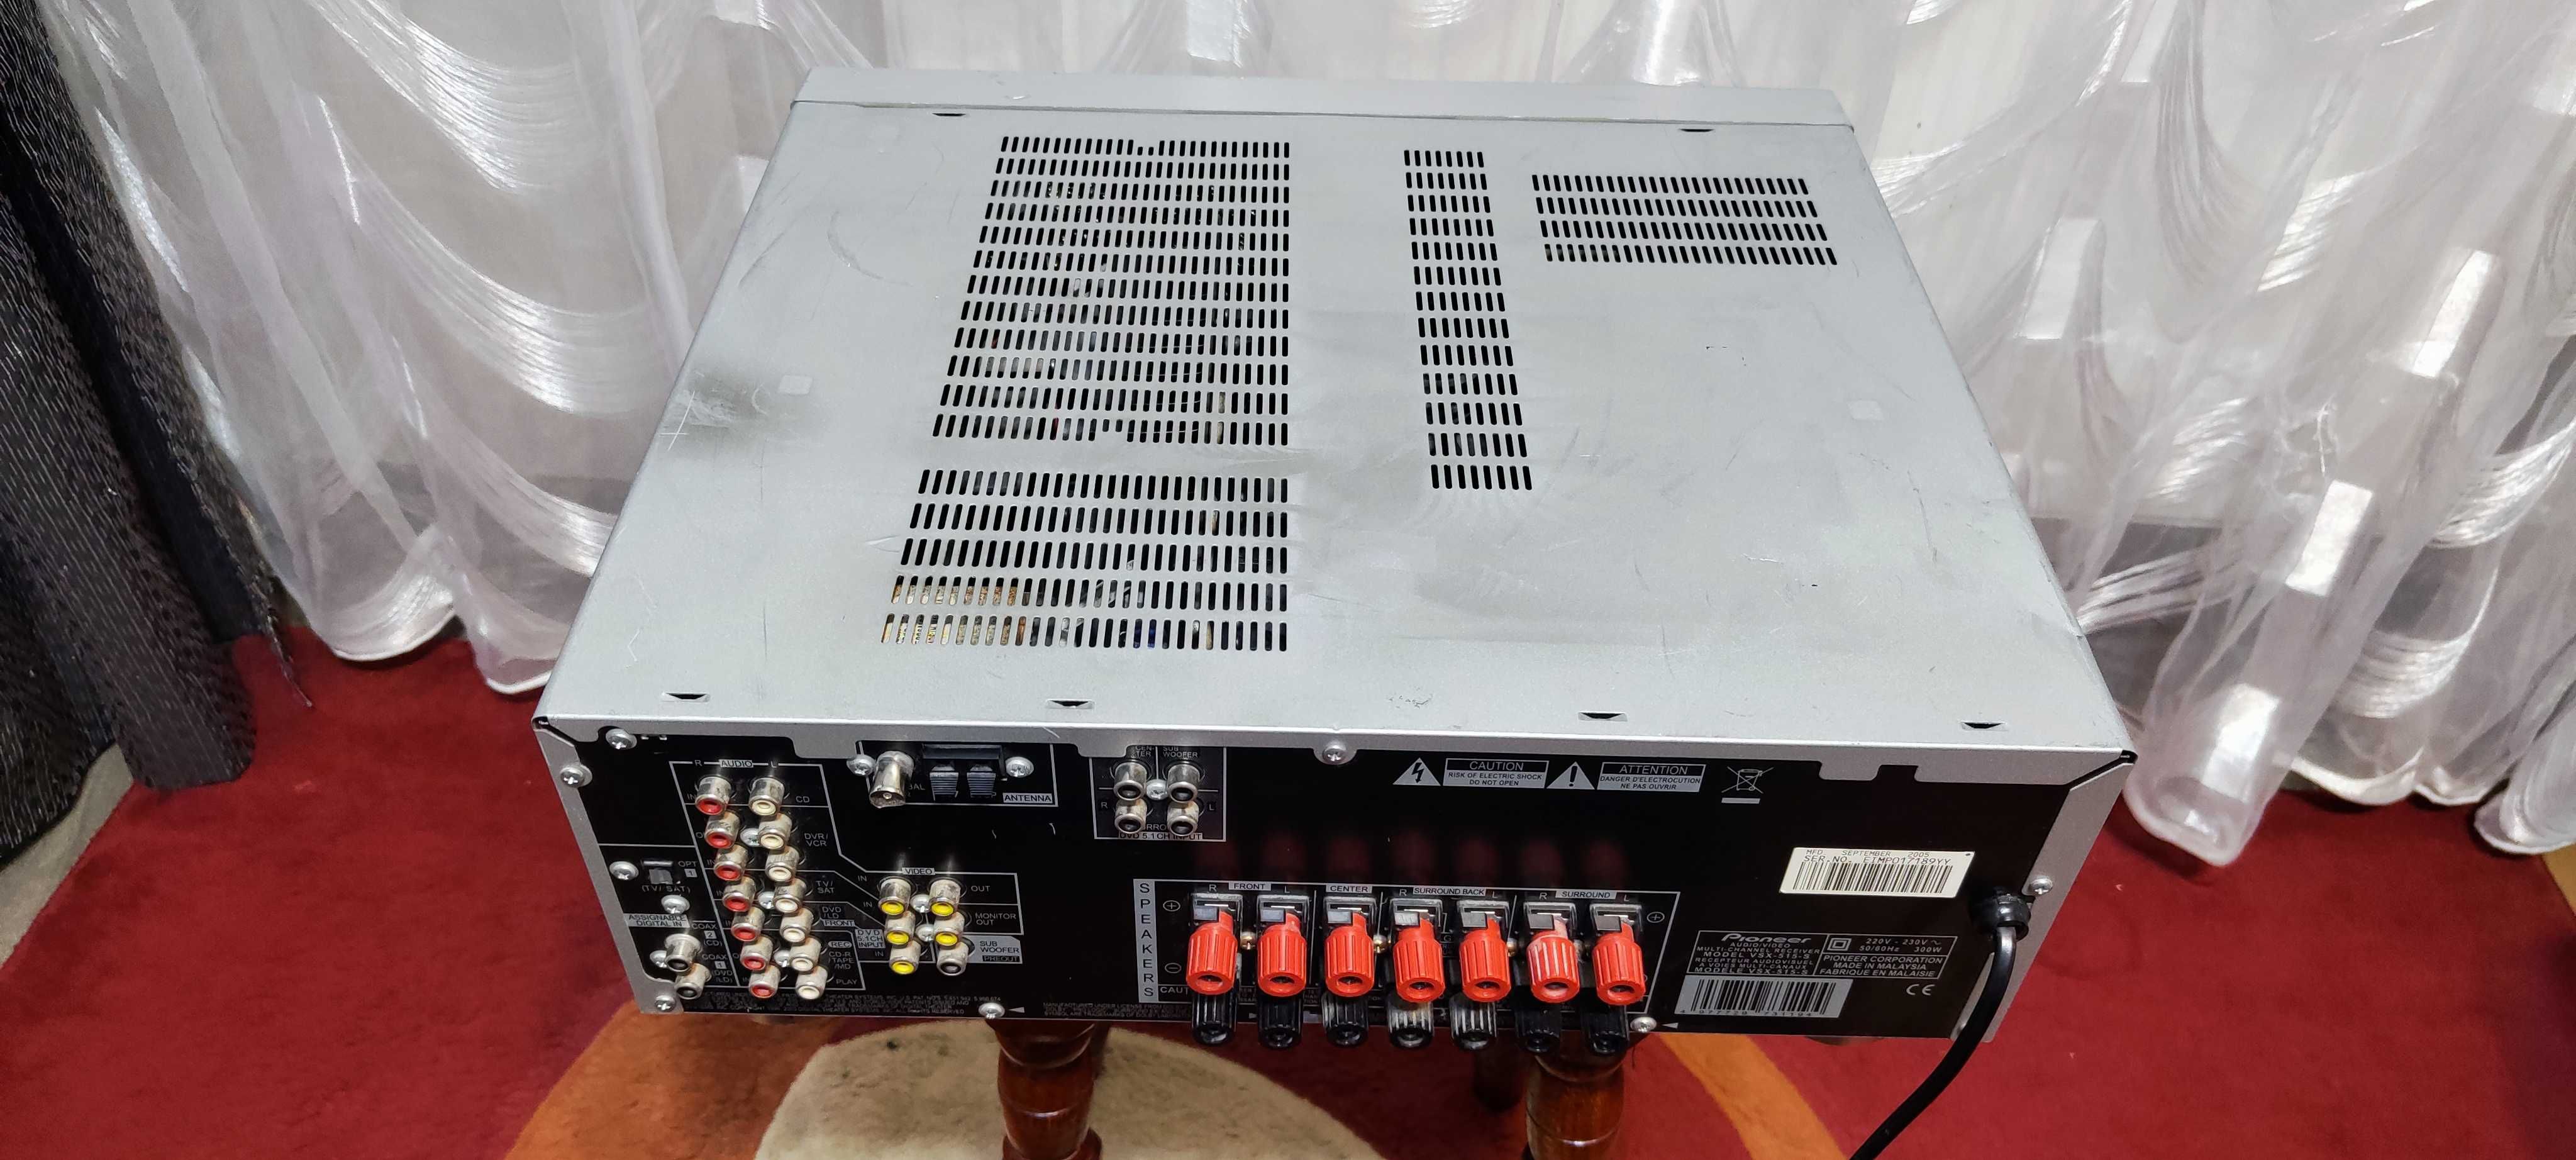 Amplificator Audio Pioneer VSX-515 Statie Audio Amplituner 2 x 110W